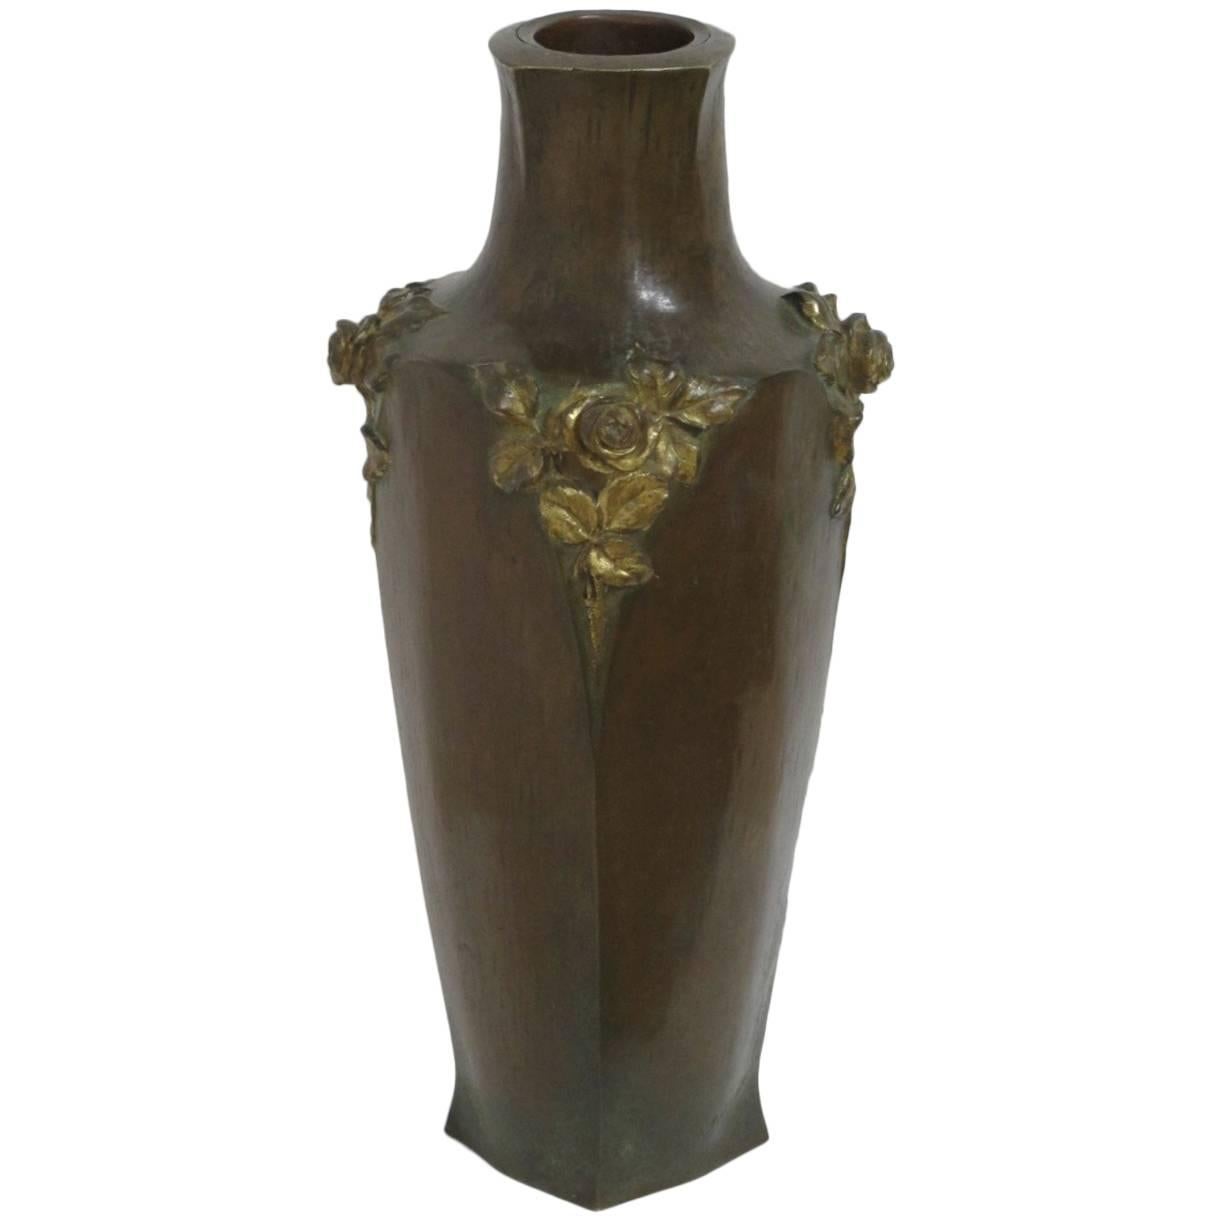 French Art Nouveau Sculptural Bronze Vase by Albert Marionnet